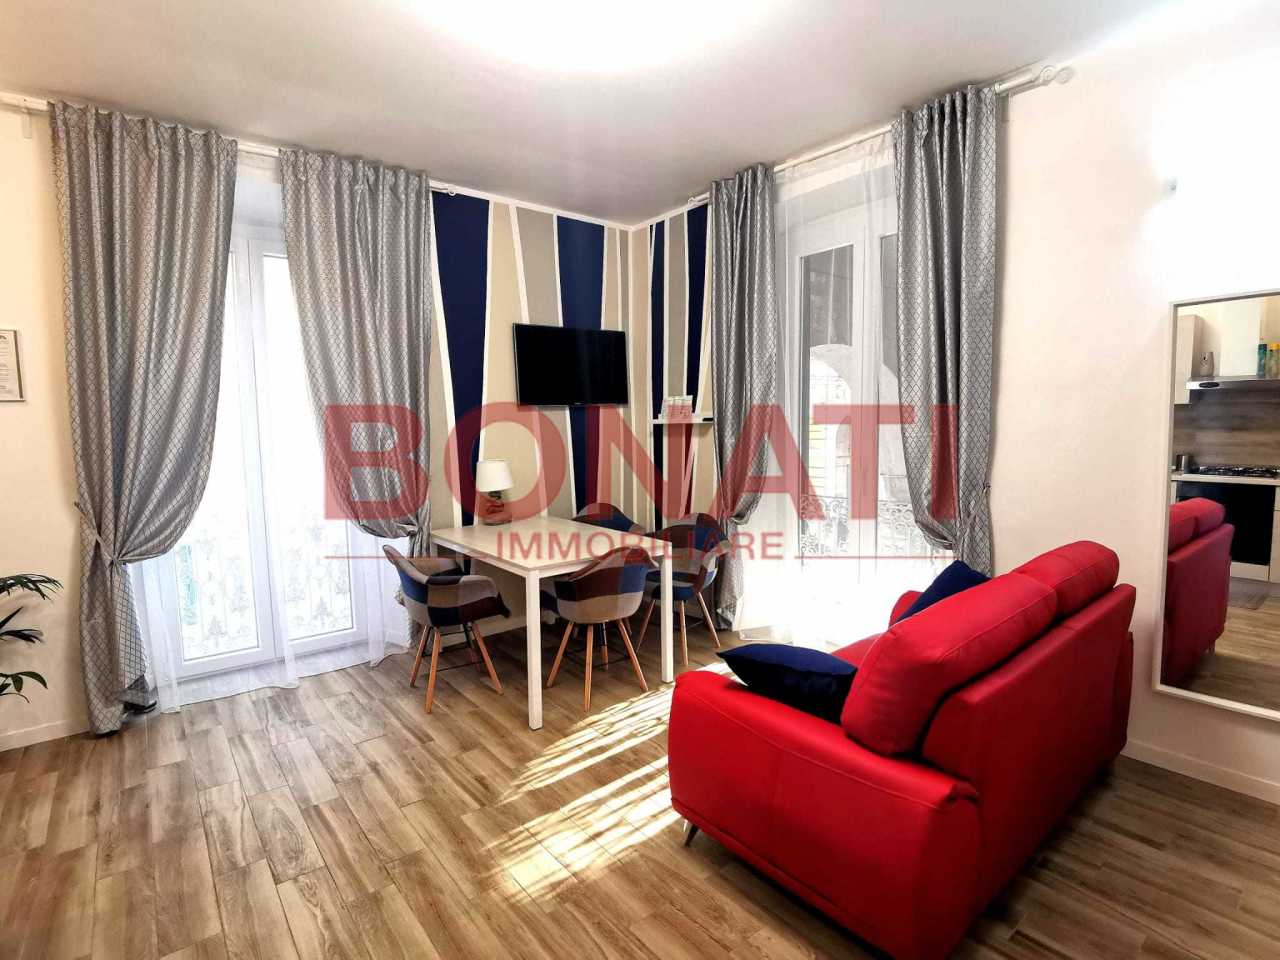 Appartamento in vendita a La Spezia, 5 locali, prezzo € 249.000 | PortaleAgenzieImmobiliari.it